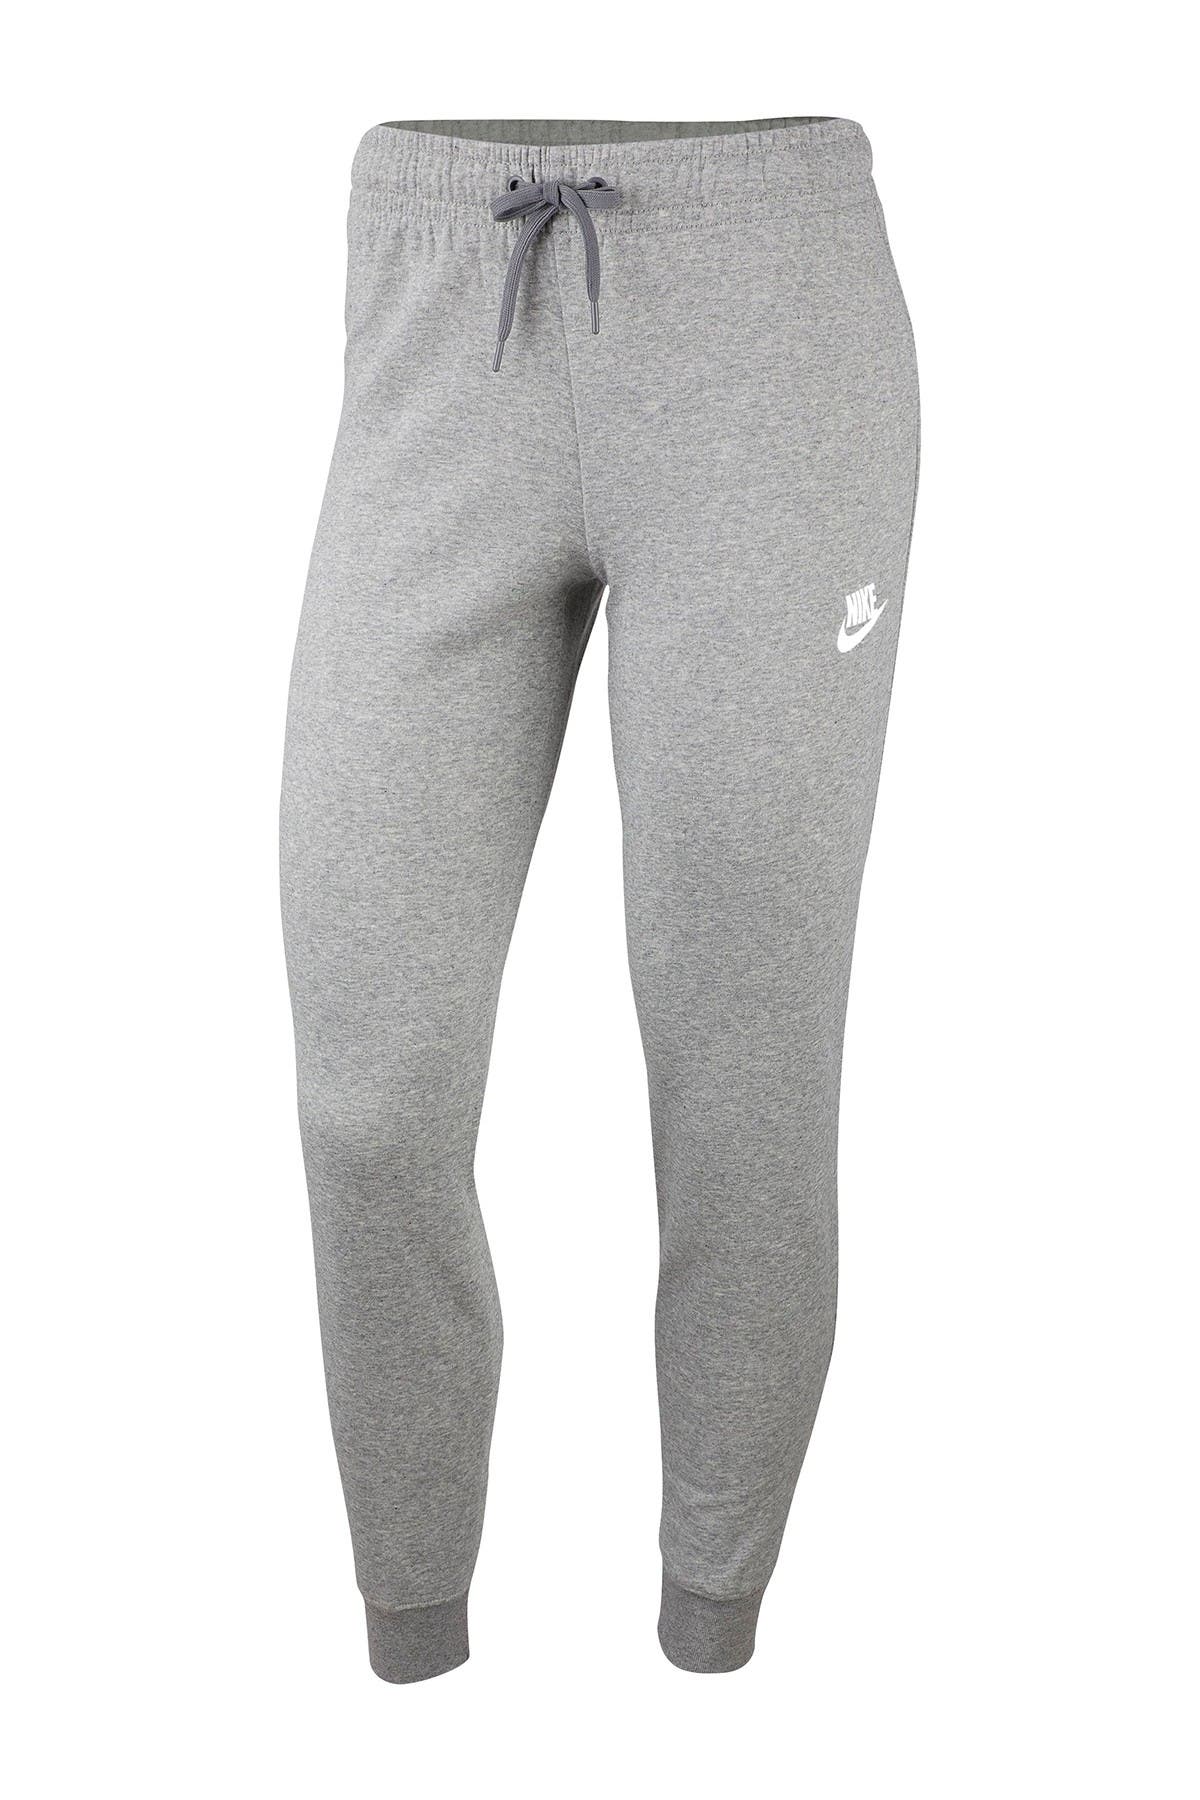 Nike | Fleece Knit Sweatpants 